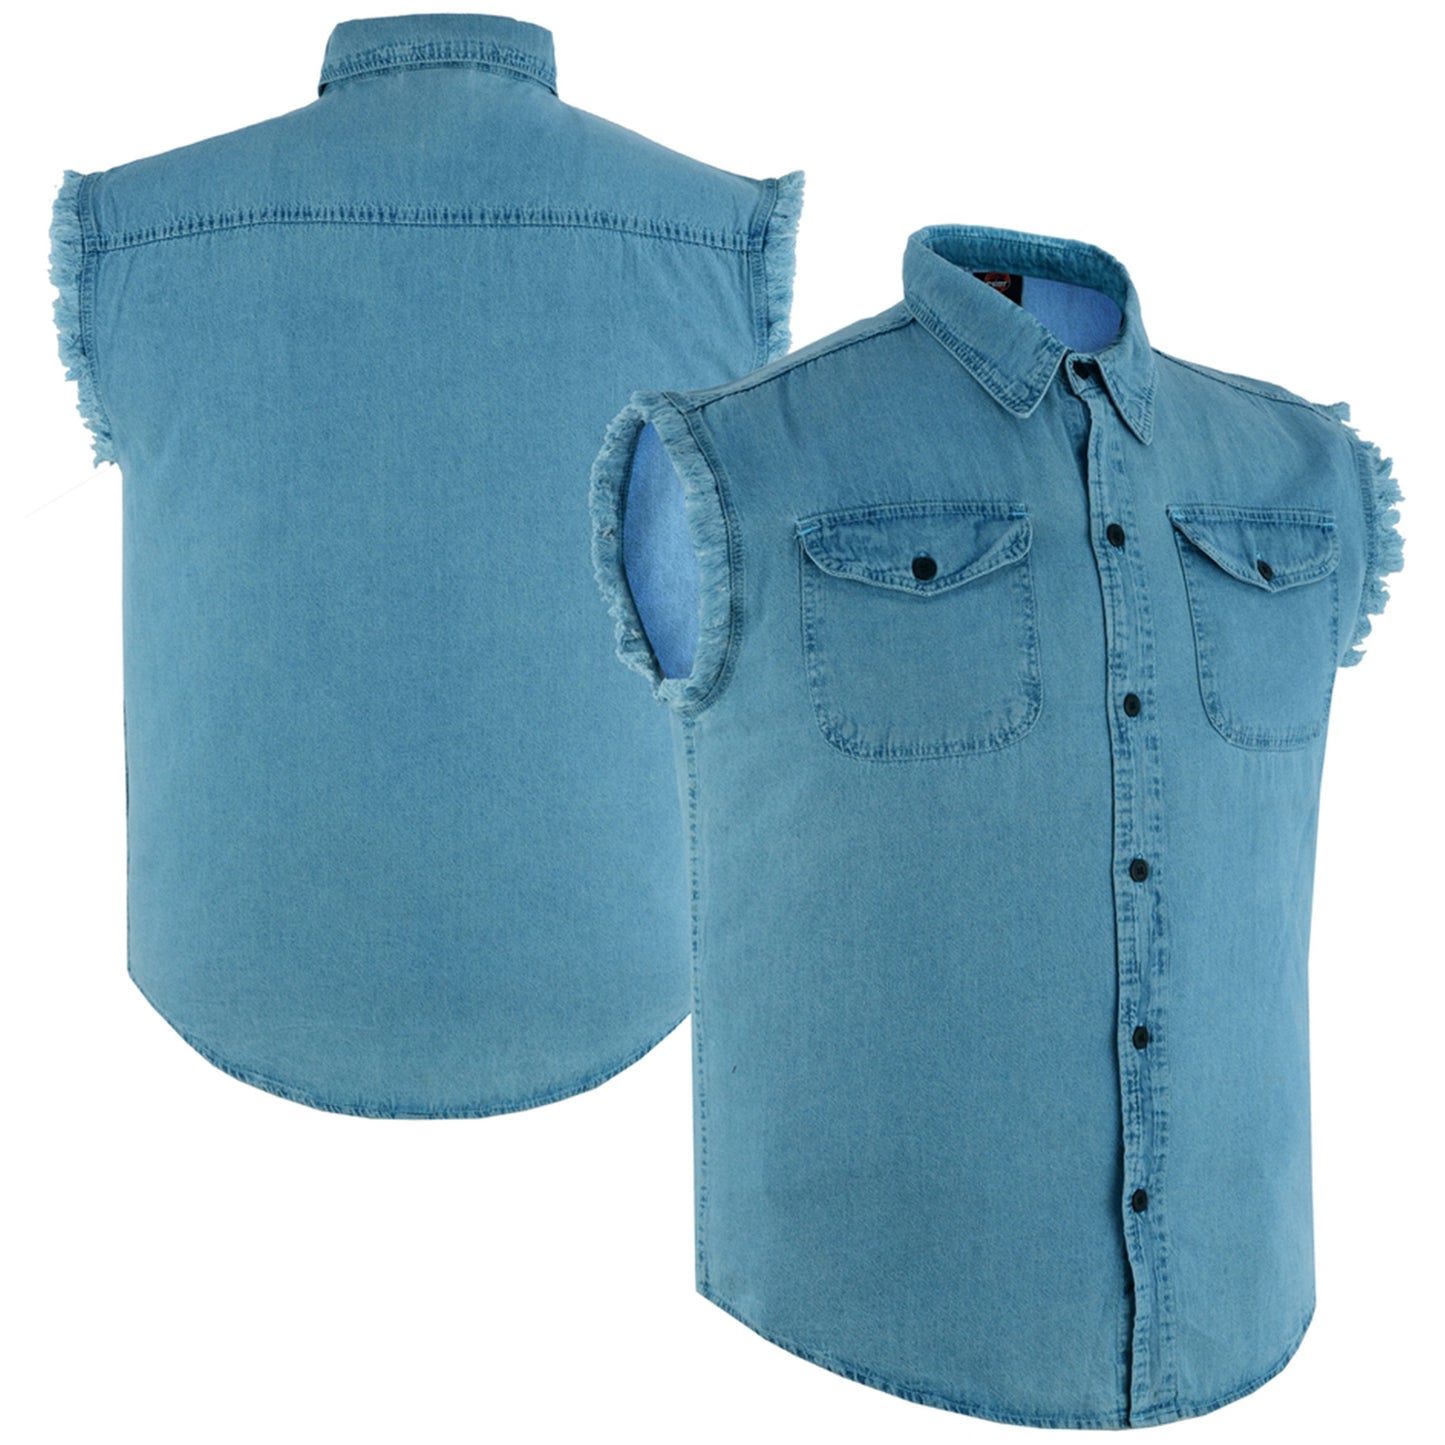 DM6002 Men's Blue Lightweight Sleeveless Denim Shirt